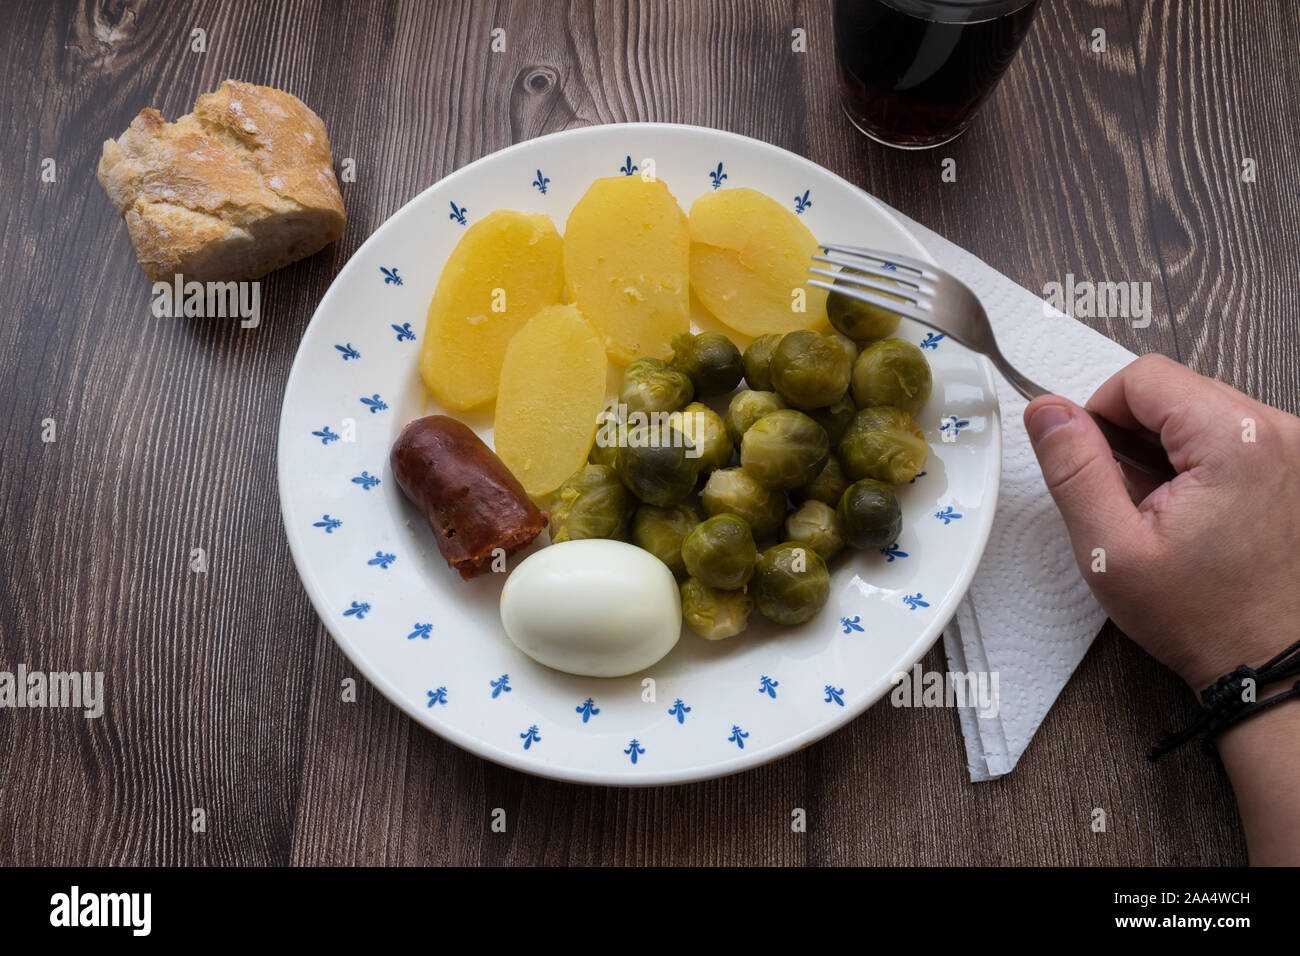 Placa con las coles de Bruselas, salchichas, patatas cocidas y huevo junto a la mano que sujeta la horquilla Foto de stock